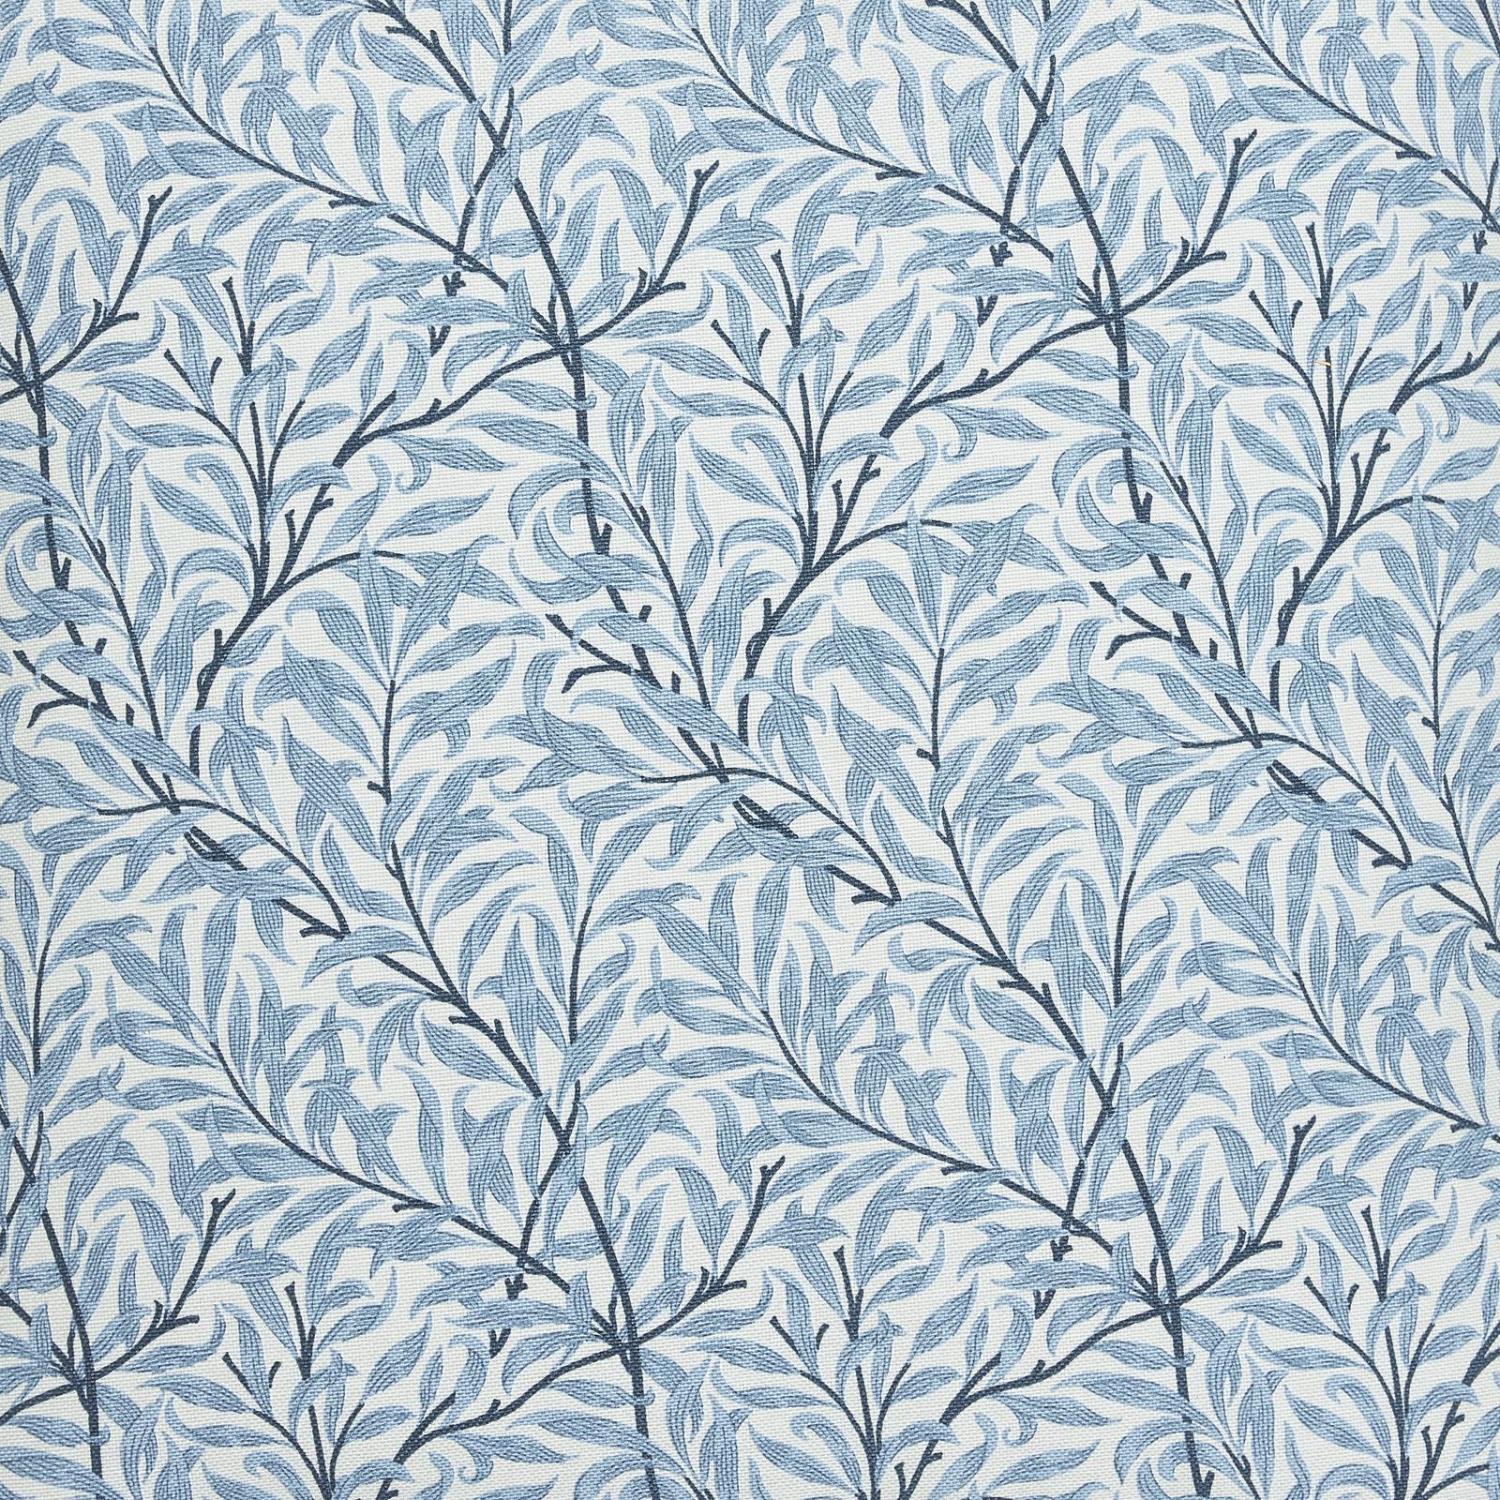 Ramas - Blått bladmønster på lyseblå bakgrunn